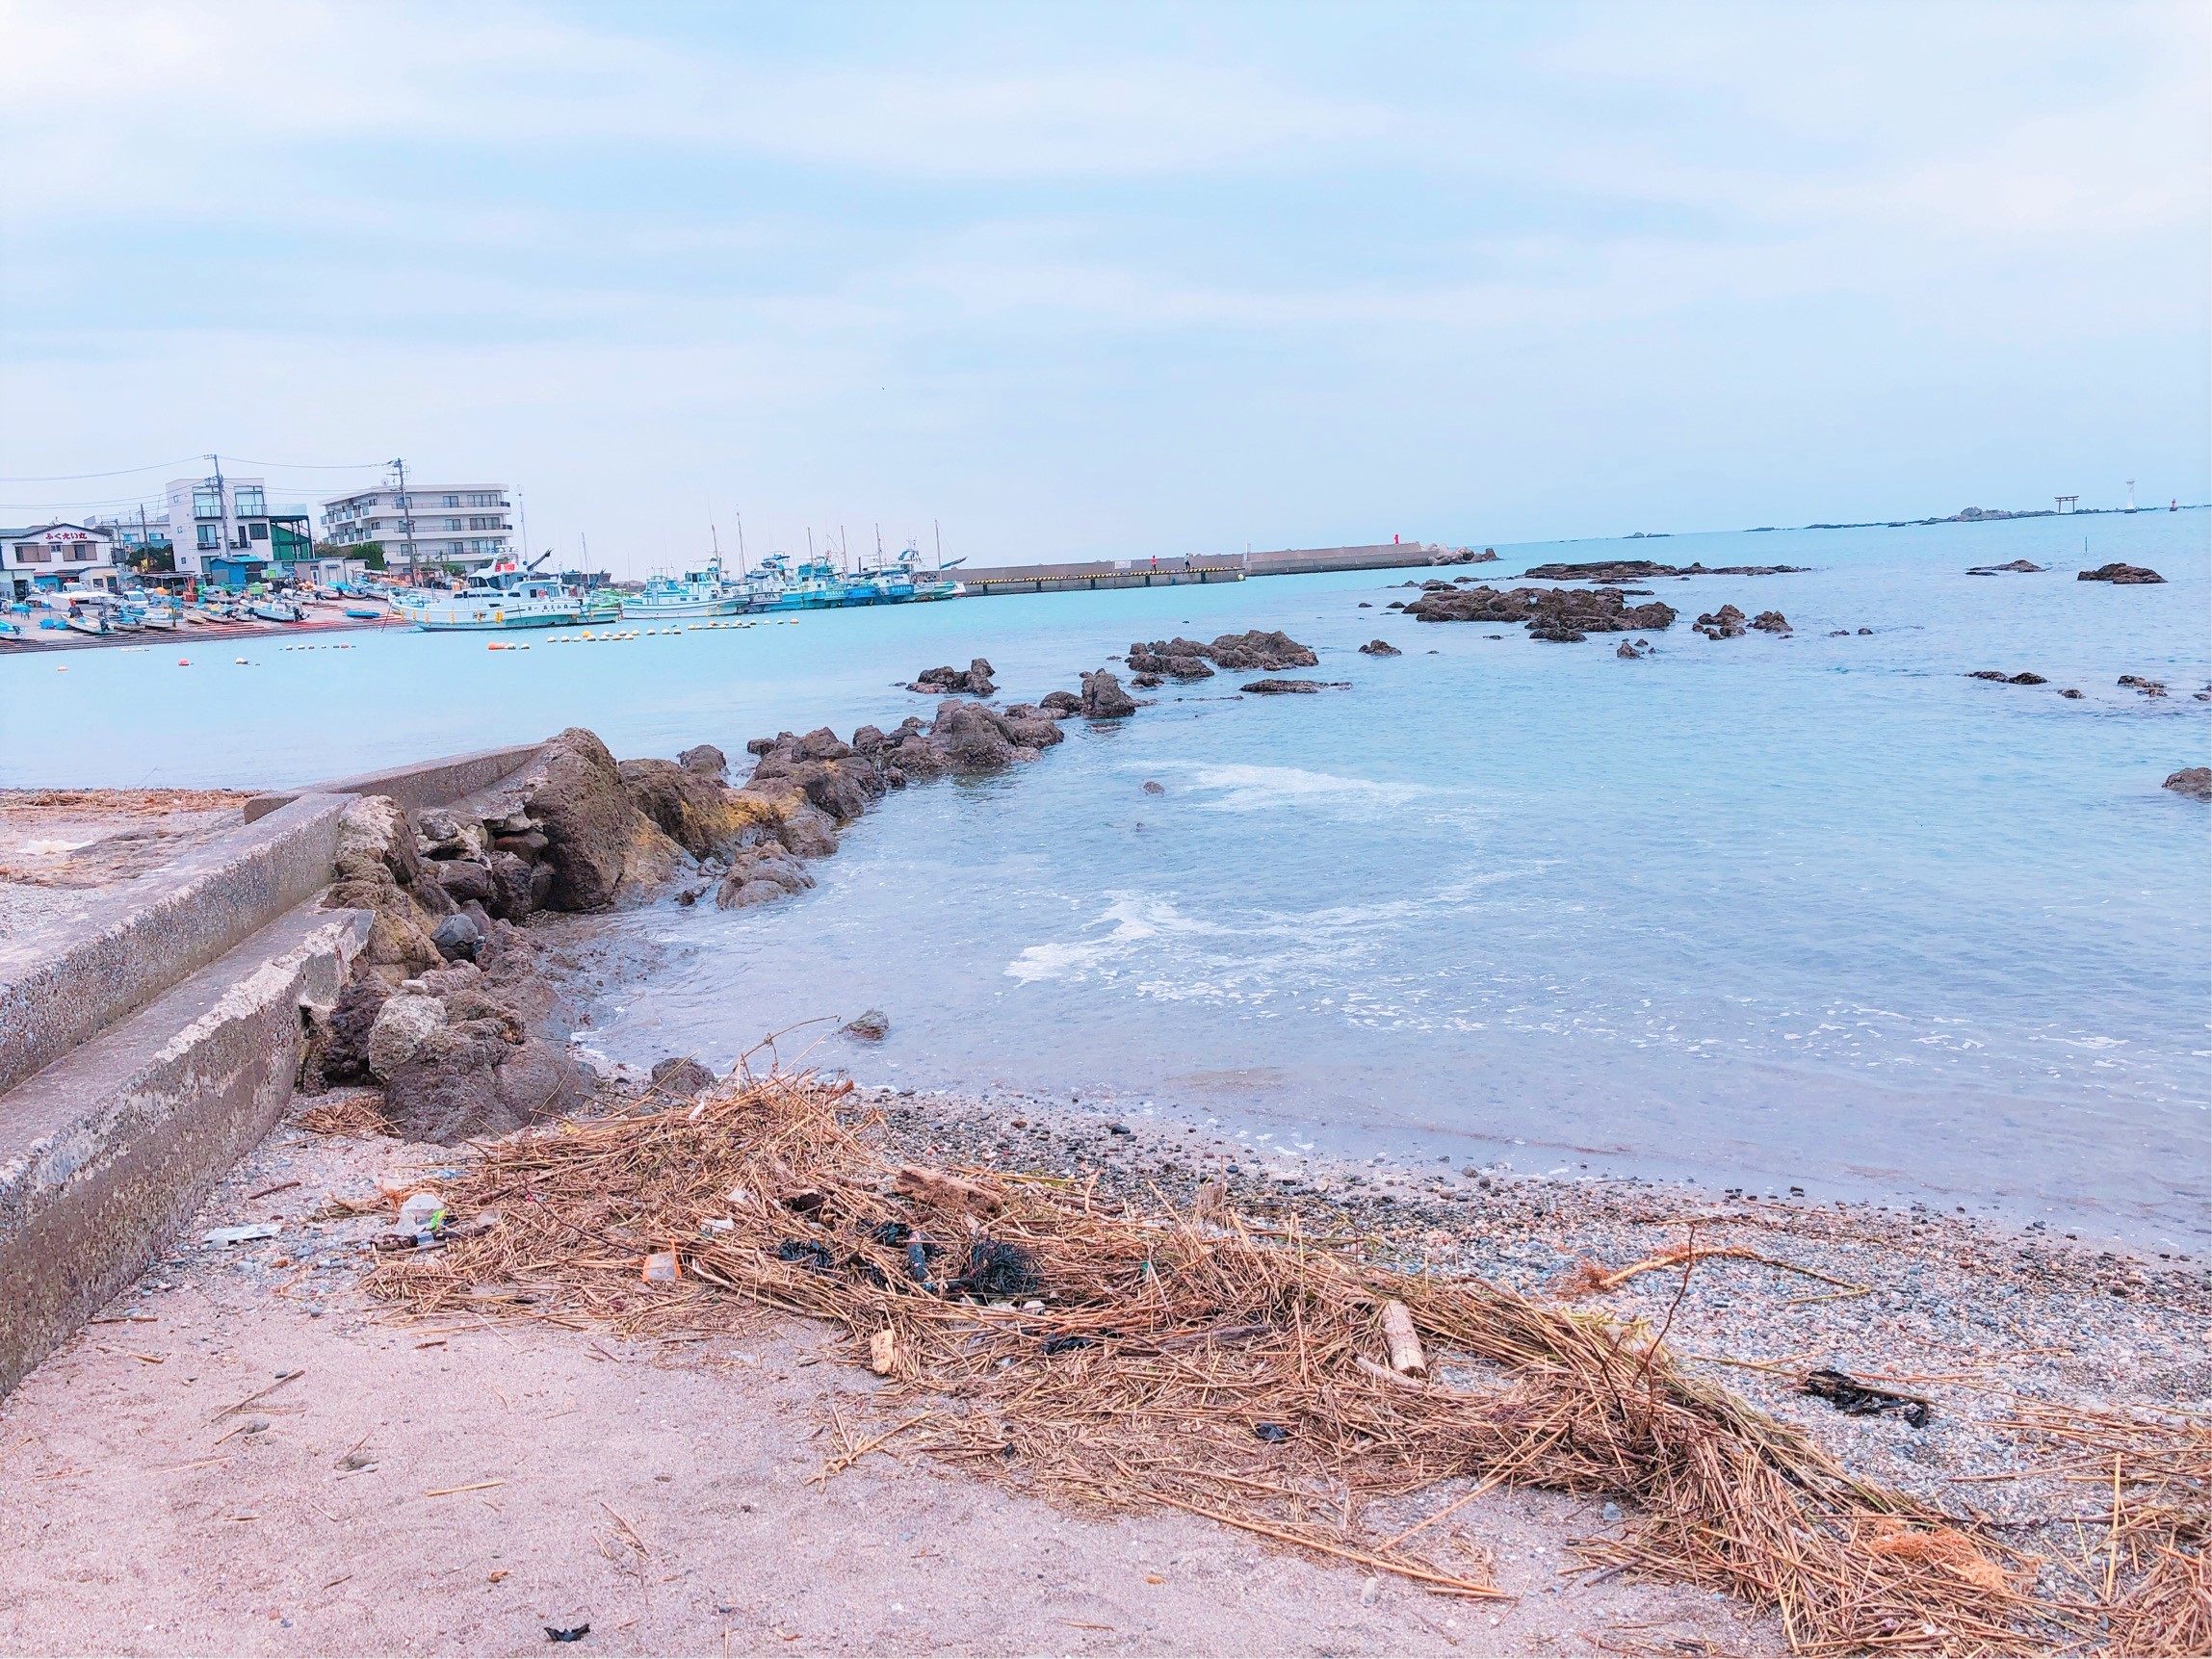 真名瀬海岸。街並みと海の色、ごつごつした石が多い砂浜の対比が素敵。